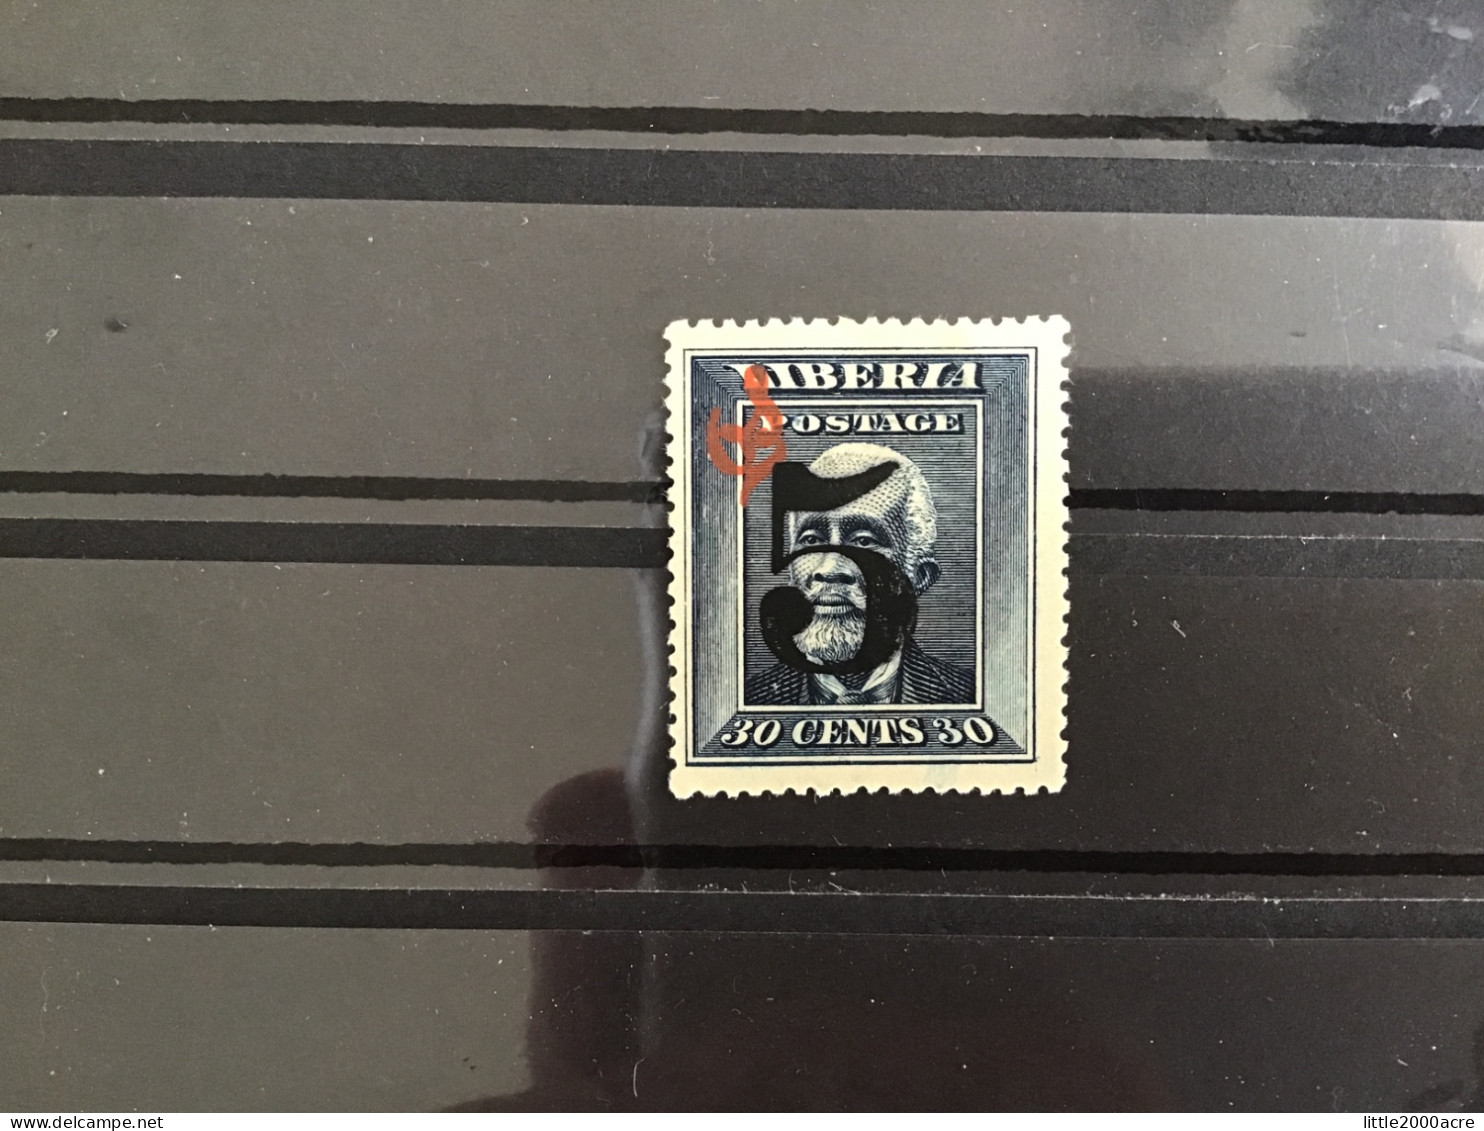 Liberia 1914 5 On 30c Official Stamp Used SG O285 - Liberia